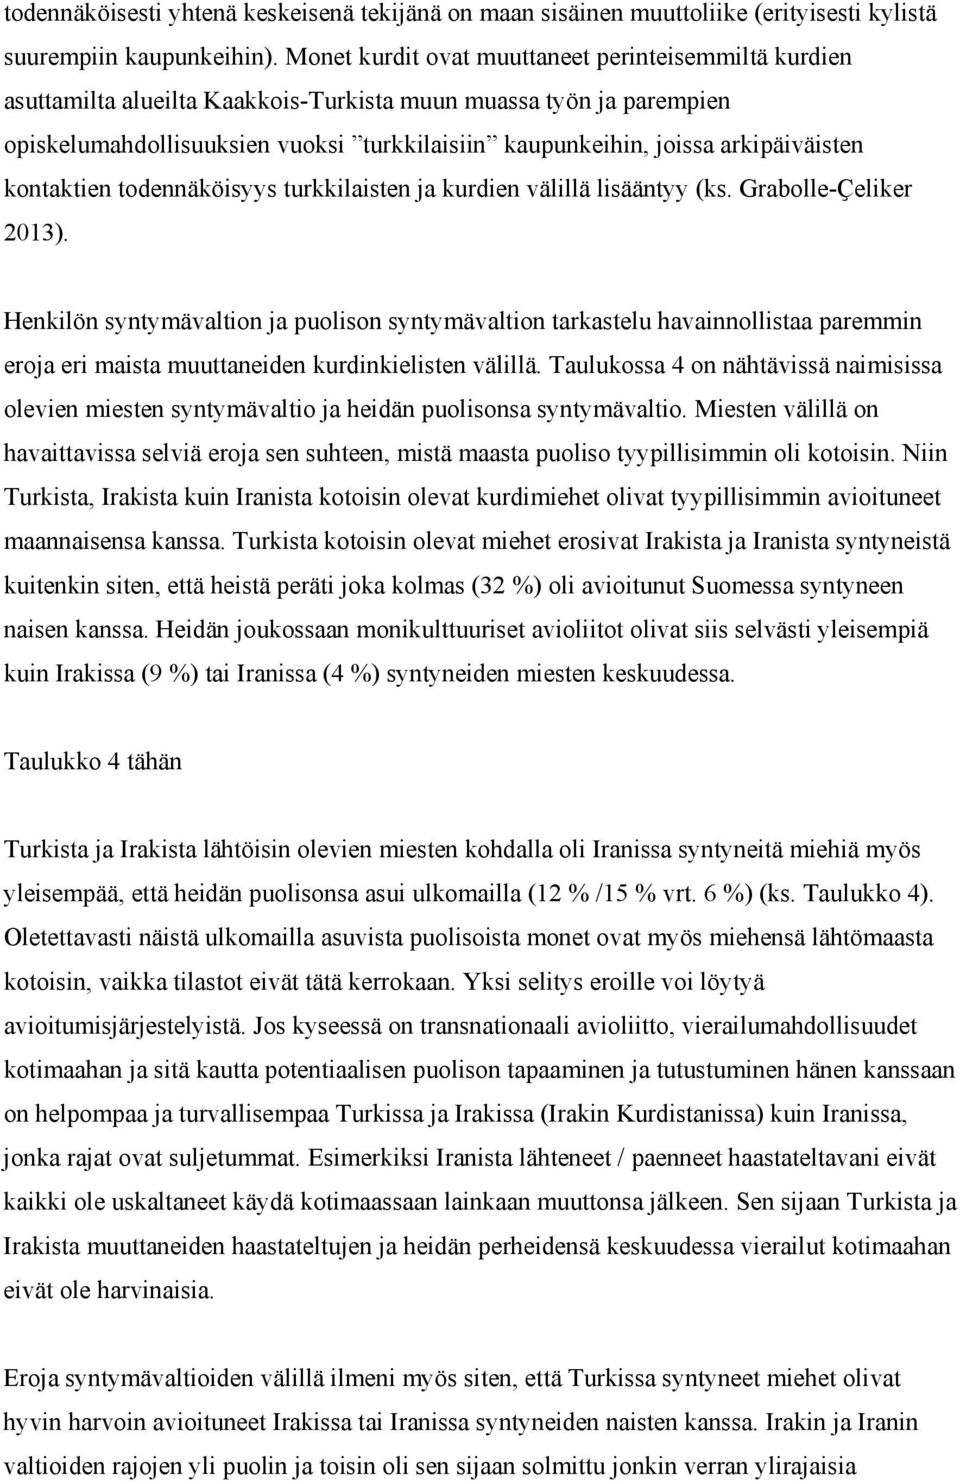 arkipäiväisten kontaktien todennäköisyys turkkilaisten ja kurdien välillä lisääntyy (ks. Grabolle-Ҫeliker 2013).